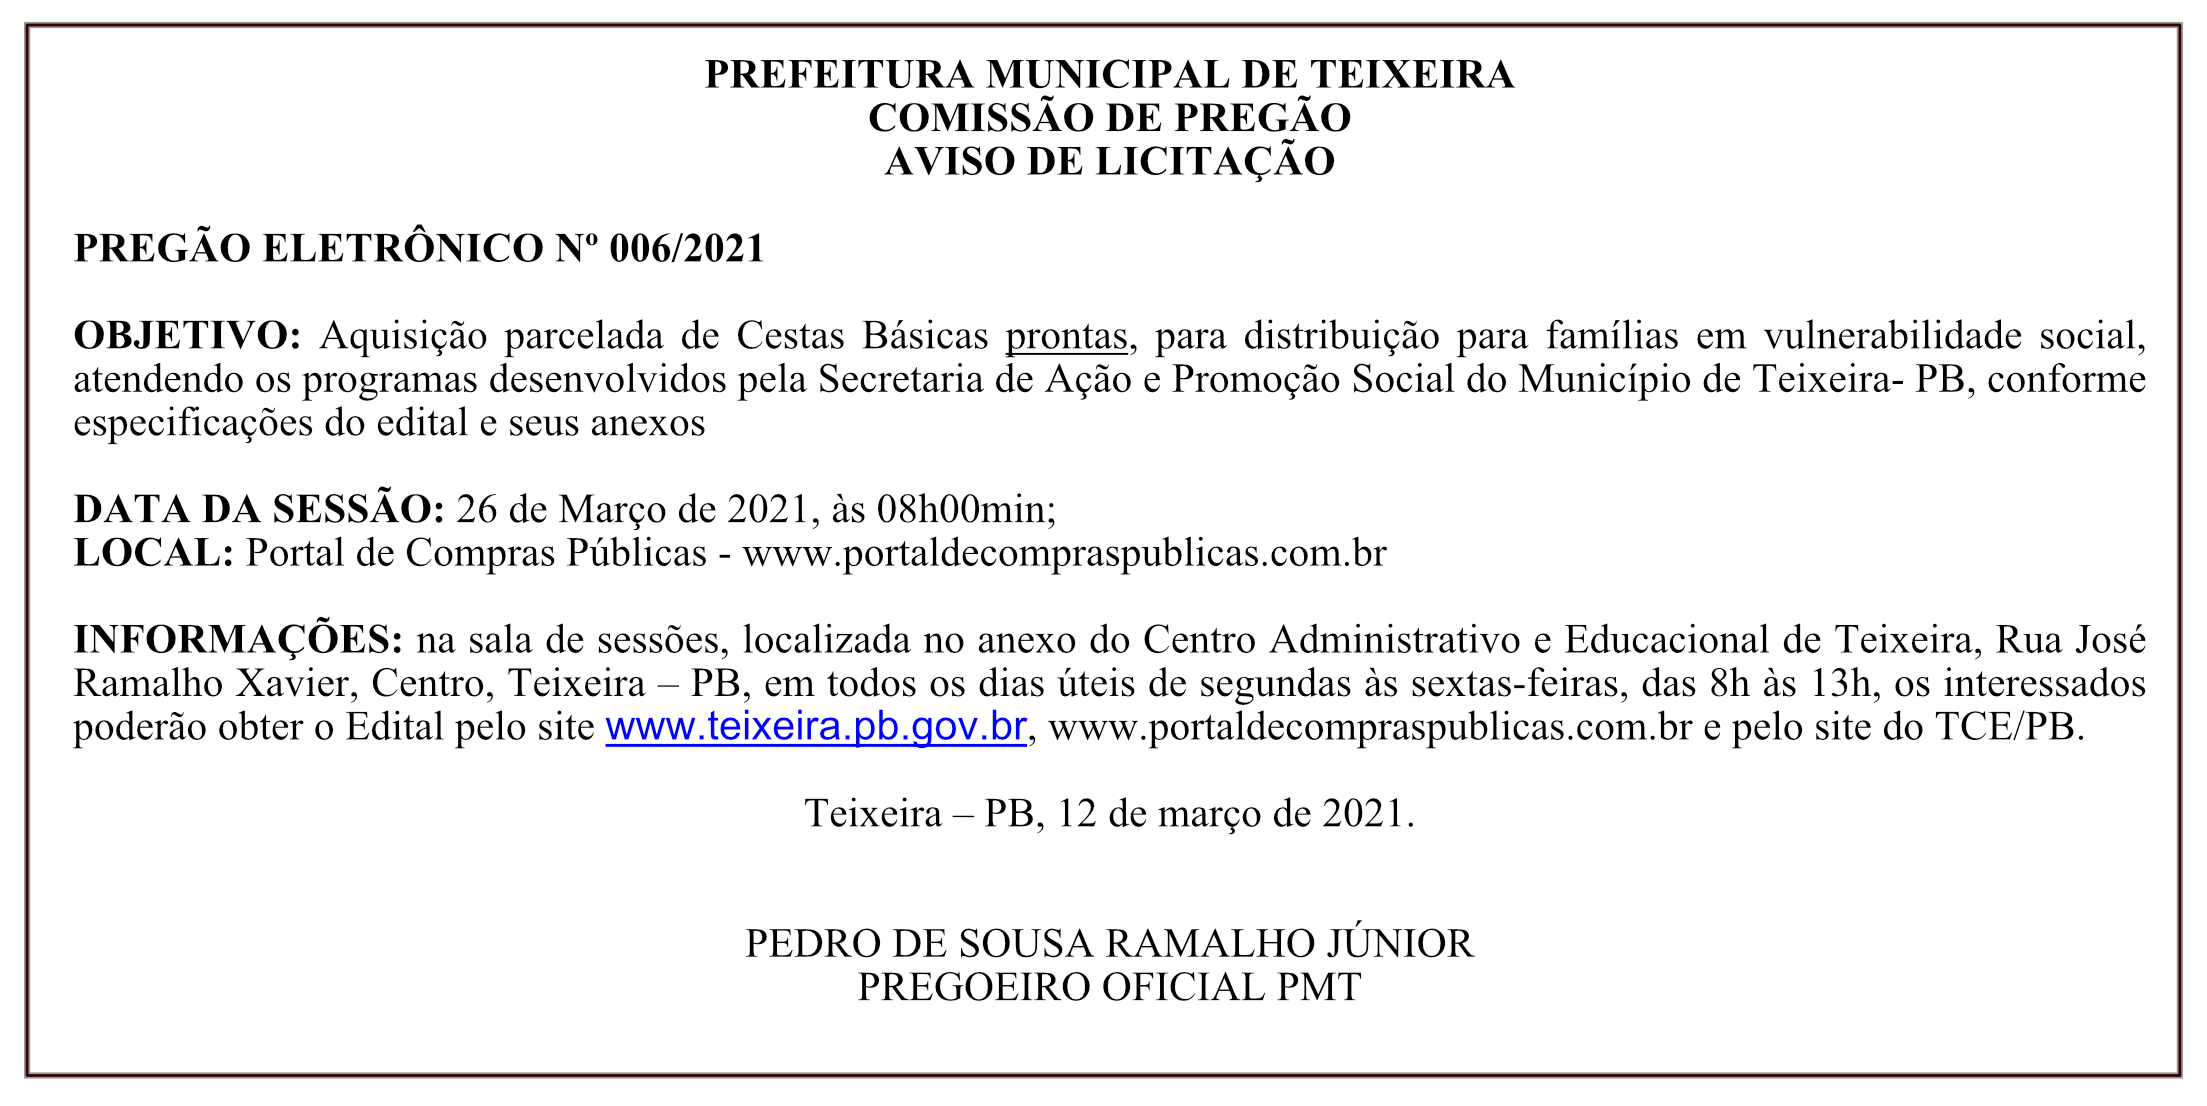 PREFEITURA MUNICIPAL DE TEIXEIRA – COMISSÃO DE PREGÃO – AVISO DE LICITAÇÃO – PREGÃO ELETRÔNICO Nº 006/2021